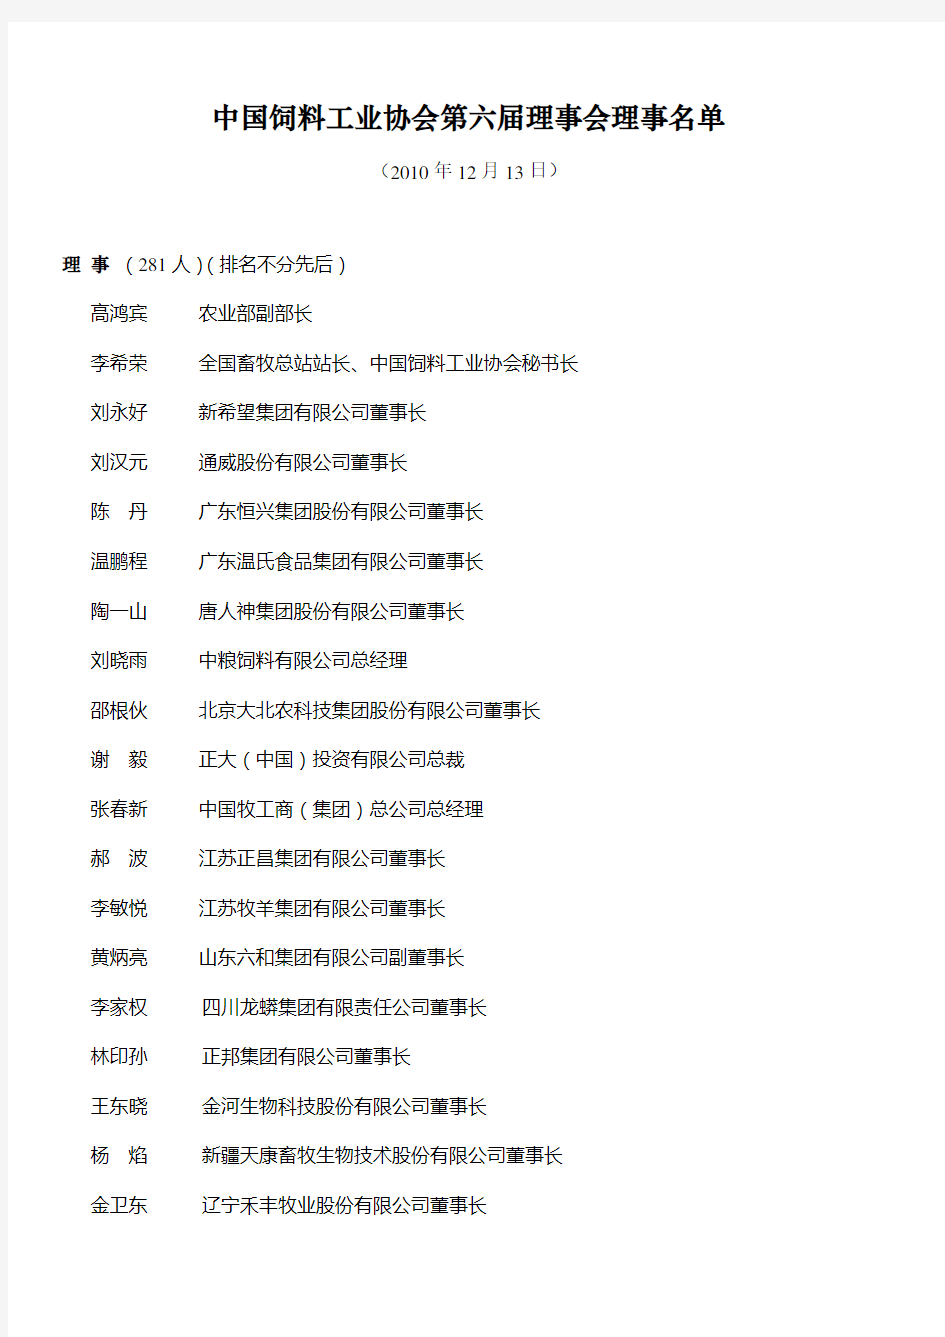 中国饲料工业协会第六届理事会理事名单